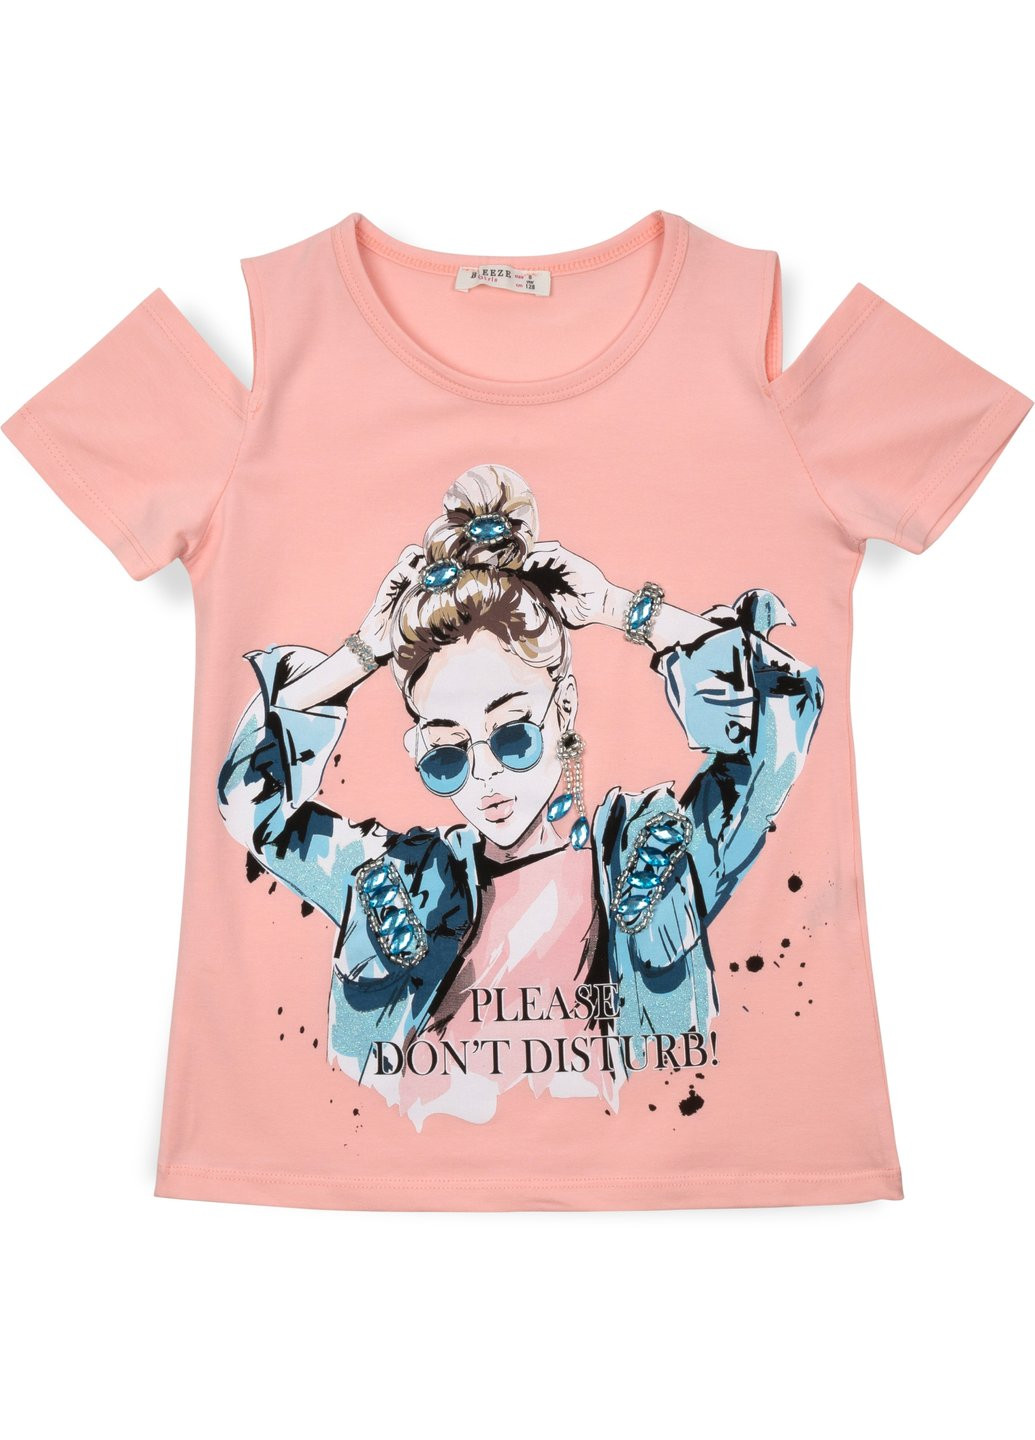 Комбинированная футболка детская с девочкой (14124-128g-peach) Breeze